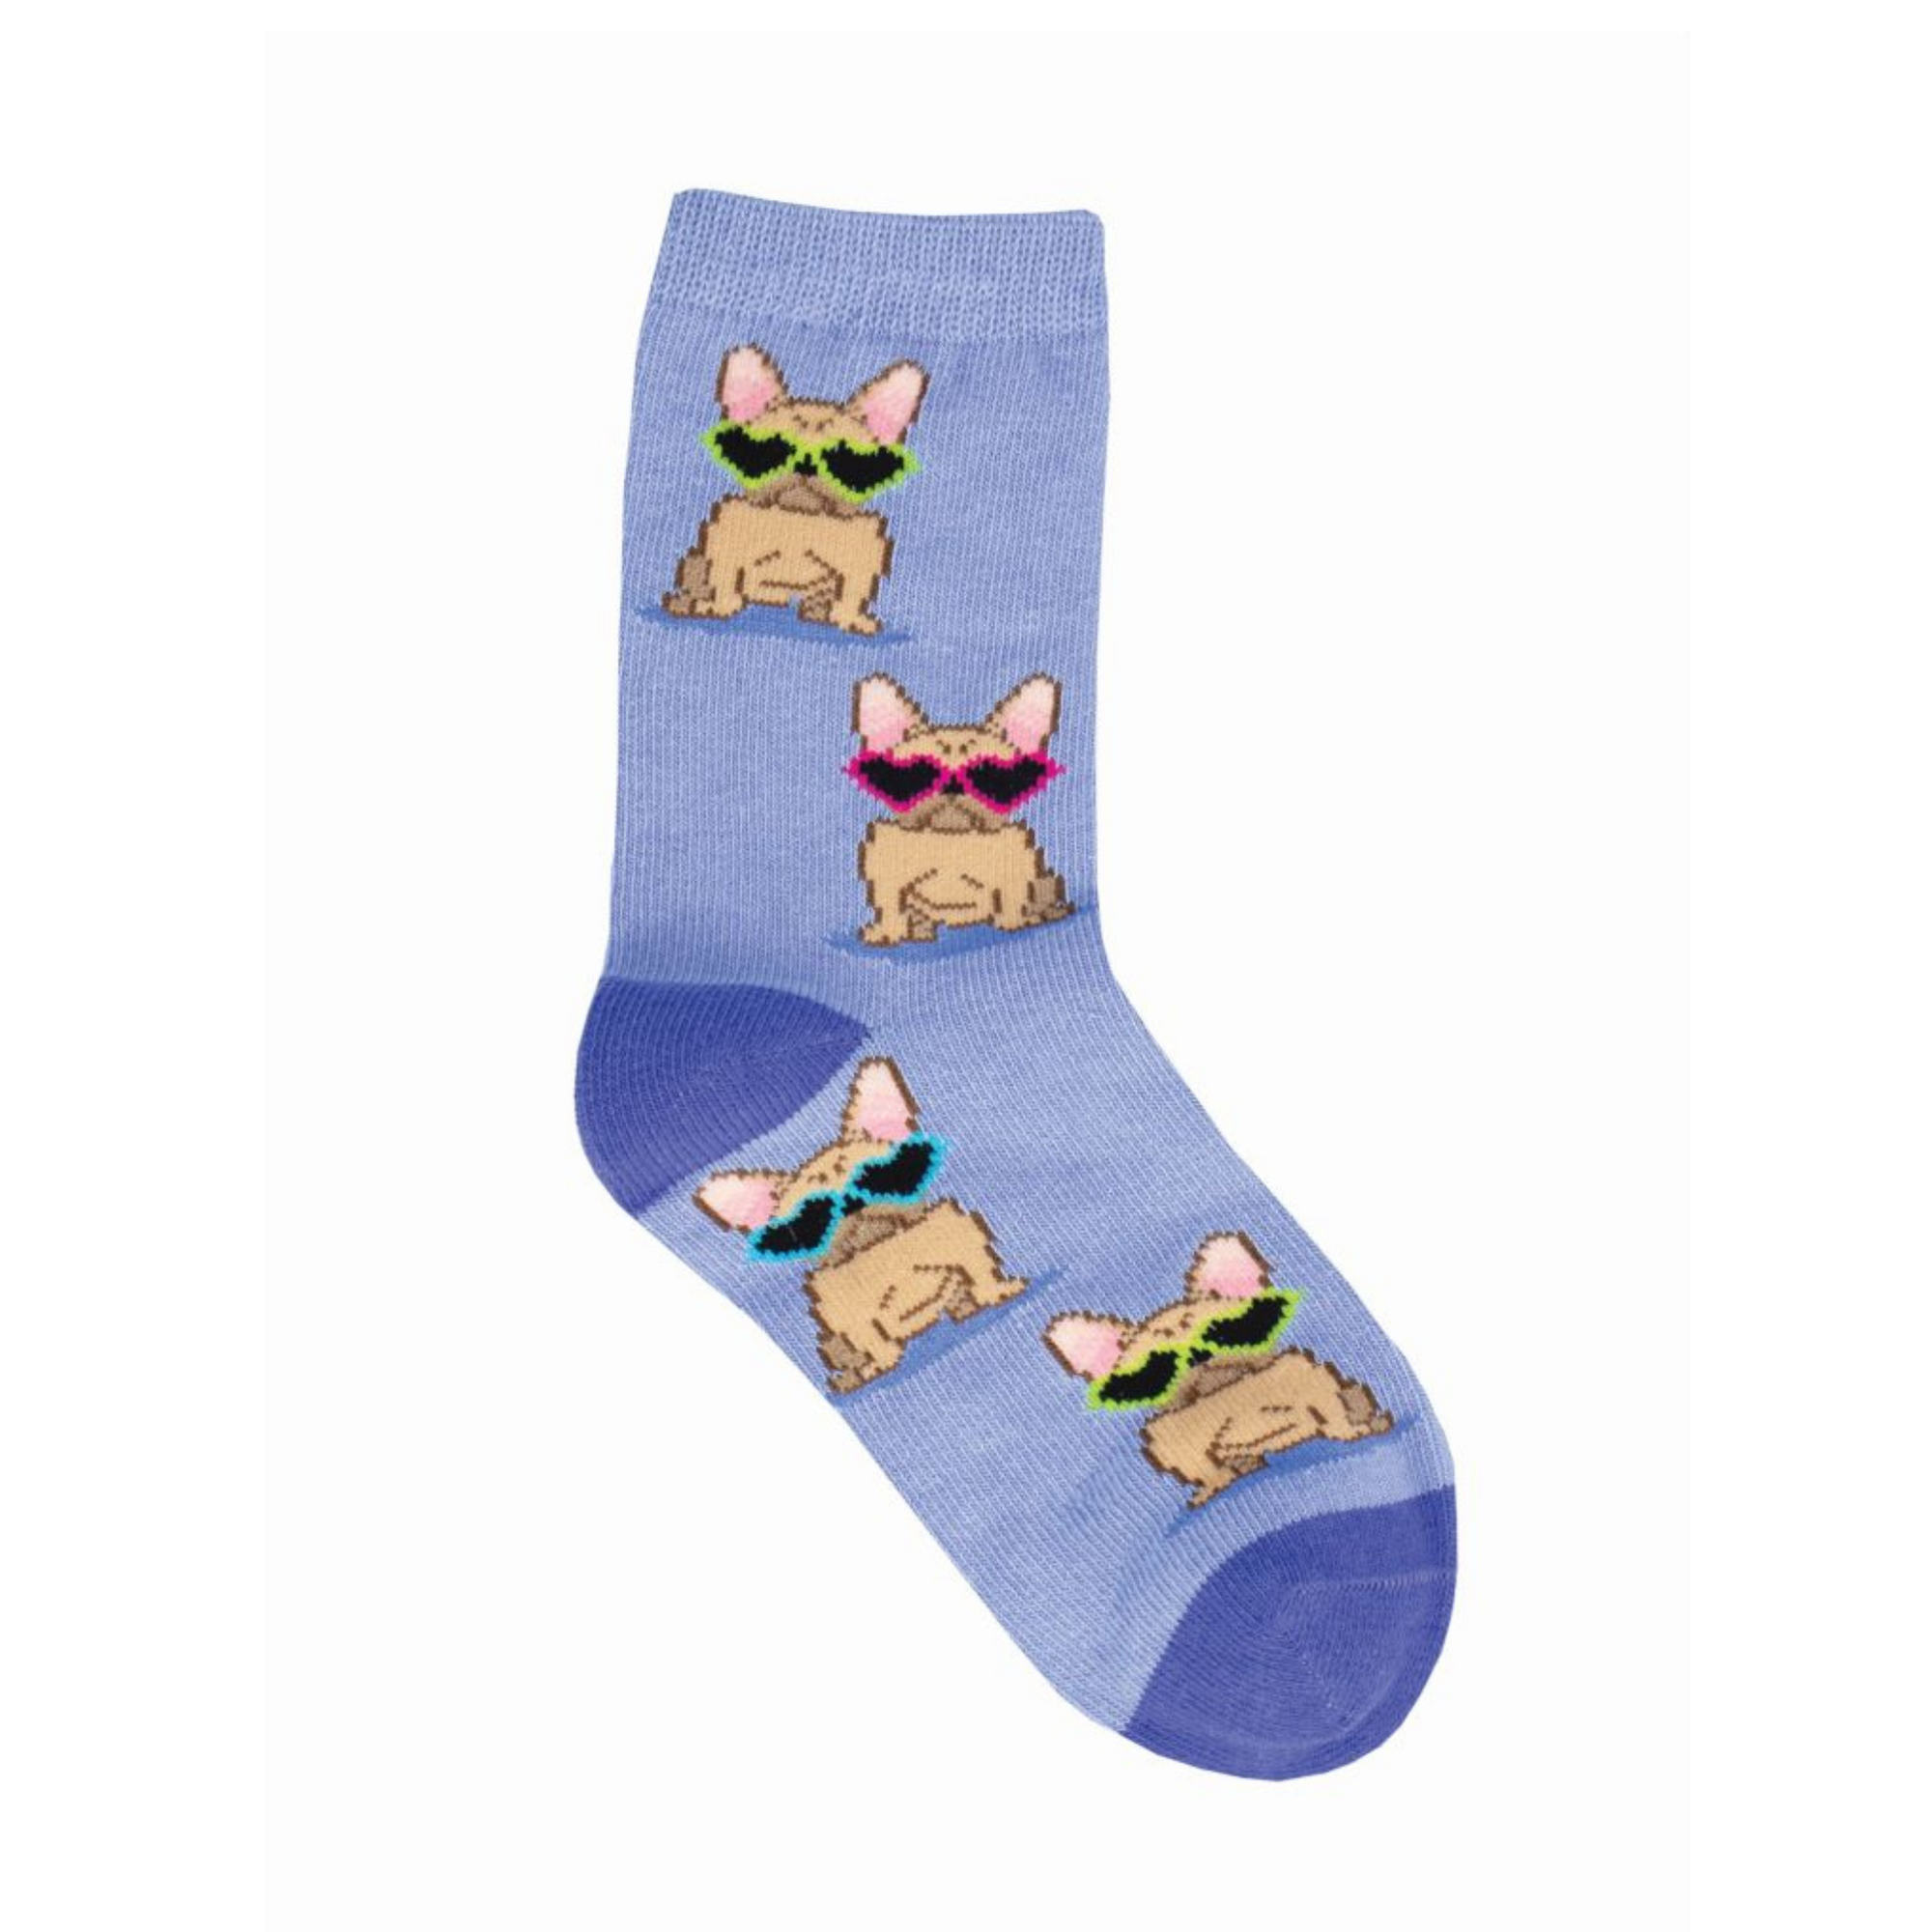 Frenchie Dog Socks - 2 - 4 yrs